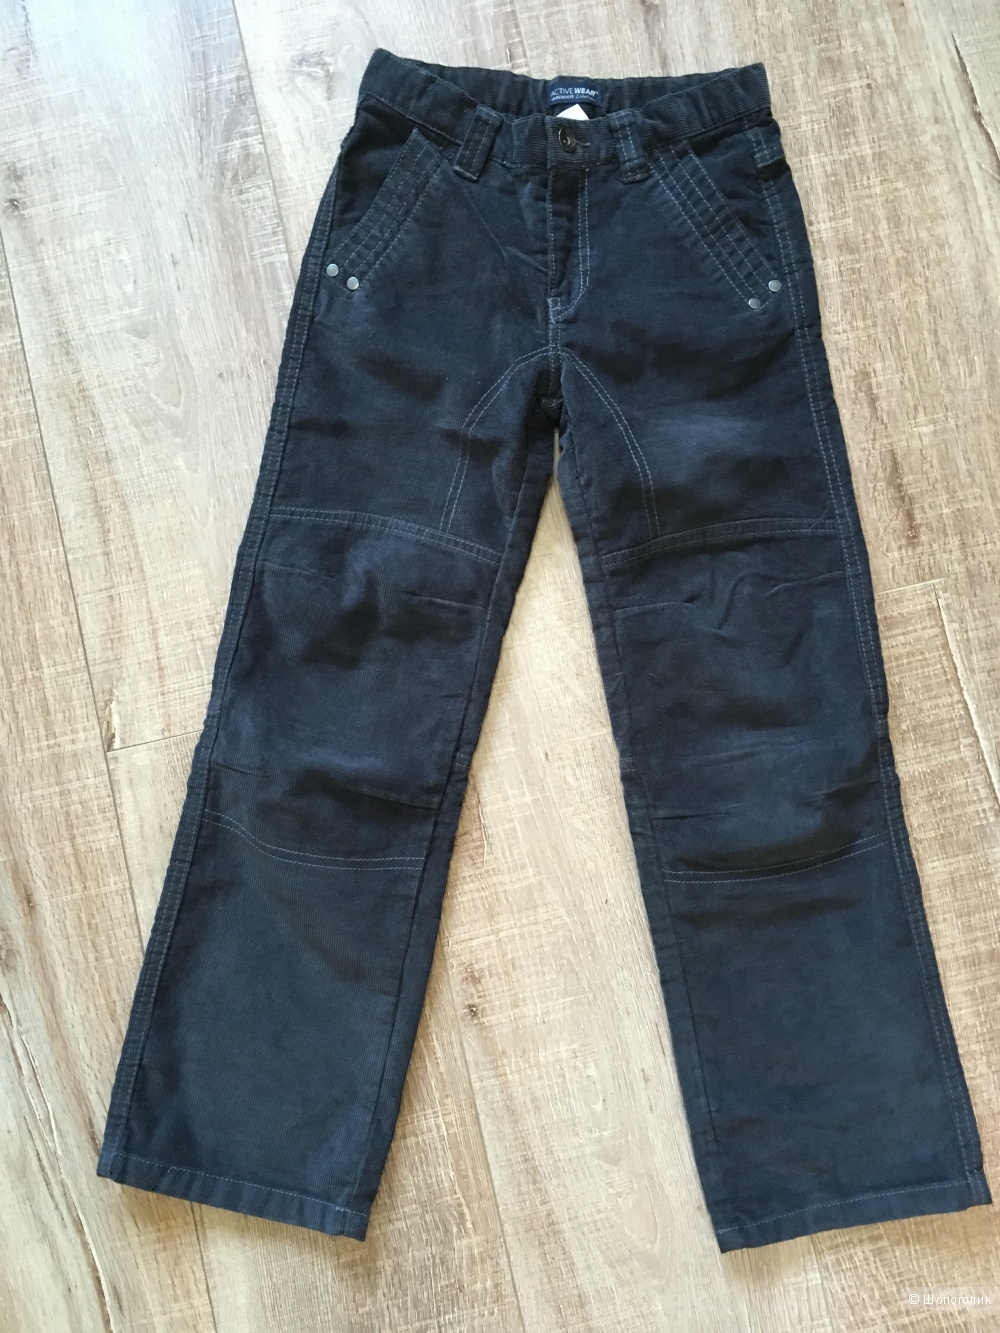 Вельветовые брюки La Redoute Creation, для мальчика, рост 126/128 см, новые